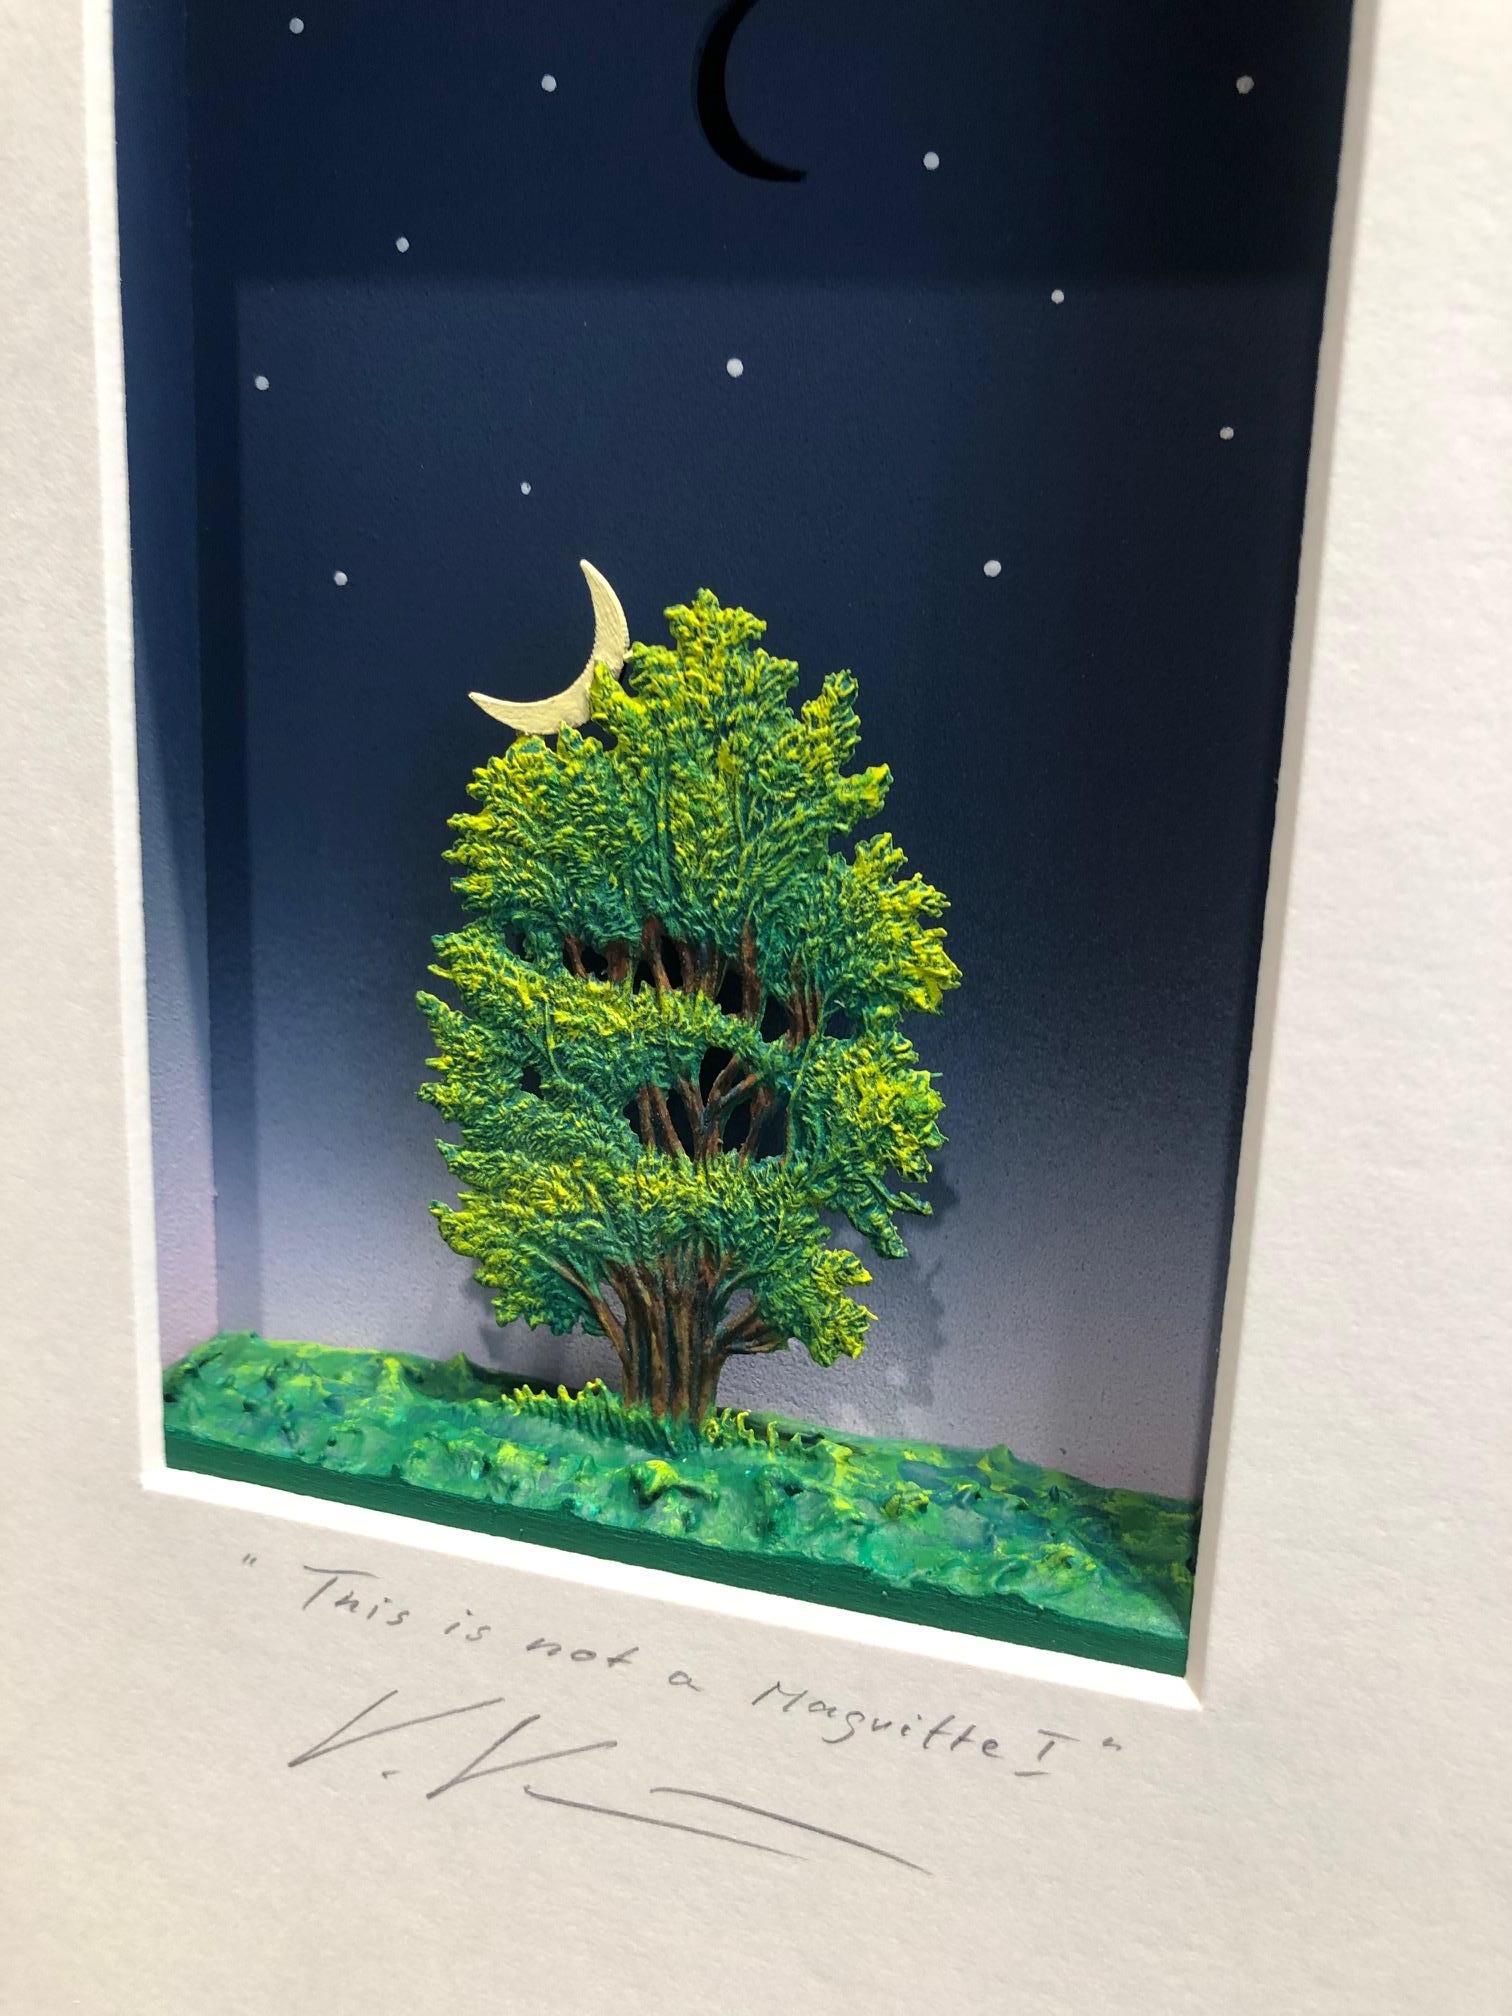 Dies ist kein Magritte I - zeitgenössisches Kunstwerk, Hommage an Magritte Malerei (Assemblage), Mixed Media Art, von Volker Kuhn